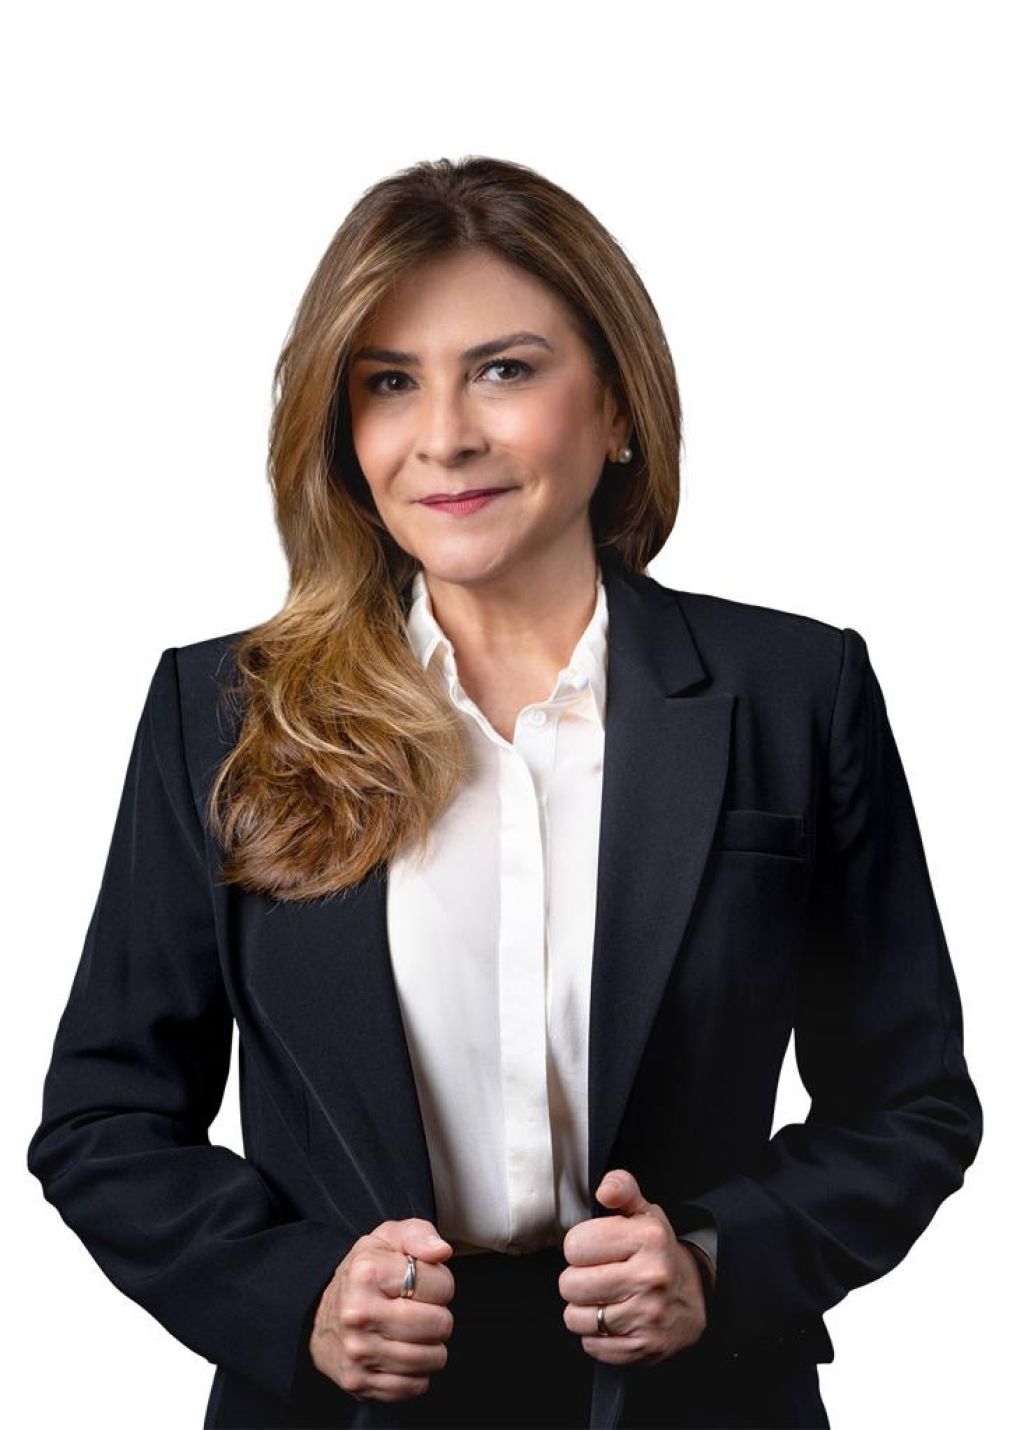 La alcaldesa del Distrito Nacional, Carolina Mejía, encabeza el ranking por segundo año consecutivo.